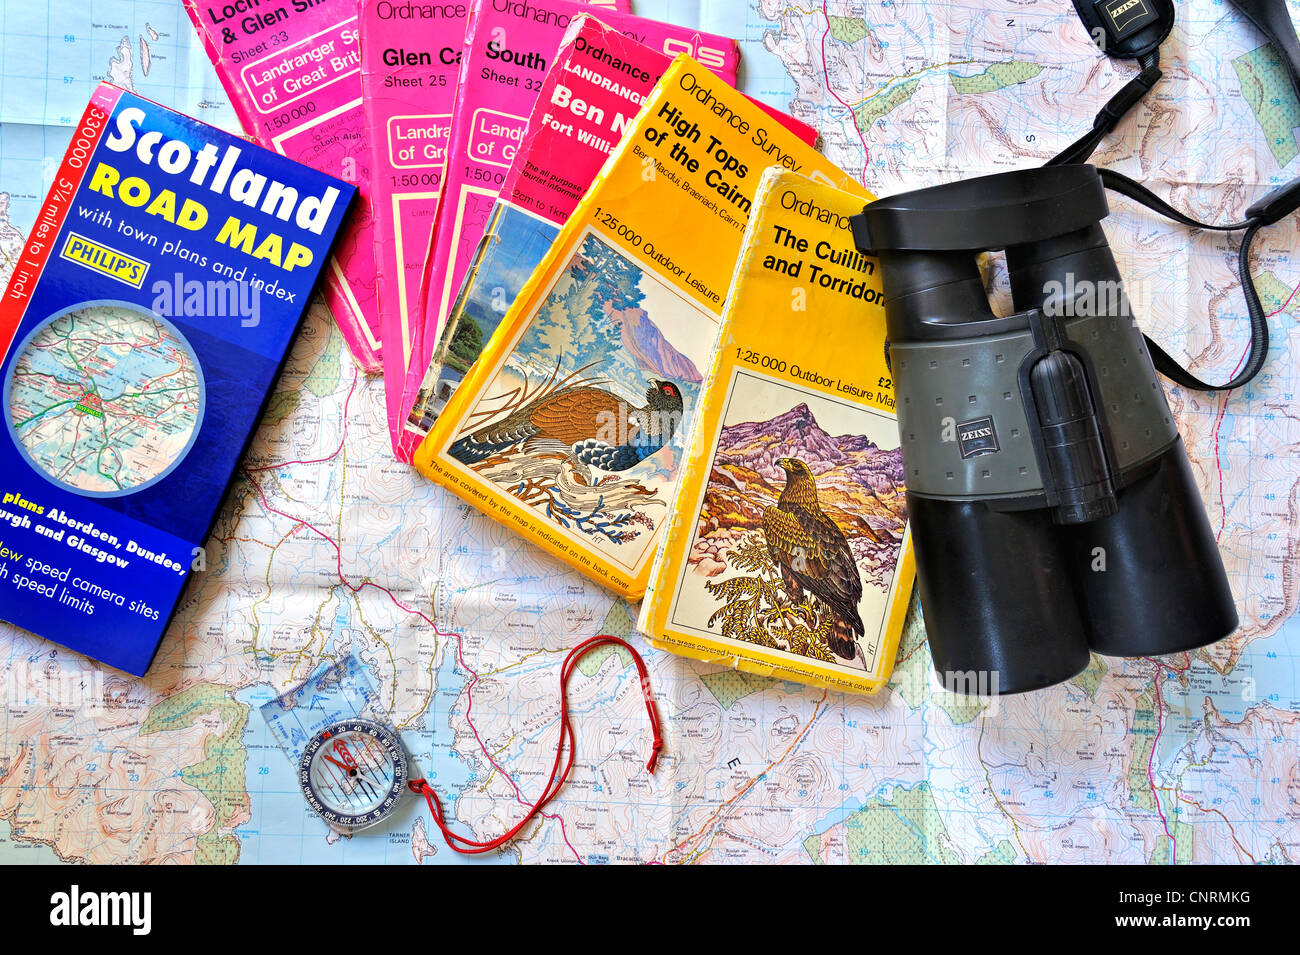 Kompass, Ferngläser und Auswahl an schottischen Ordnance Survey topographische Karten über Schottland, UK, Wildlife Reise planen Stockfoto